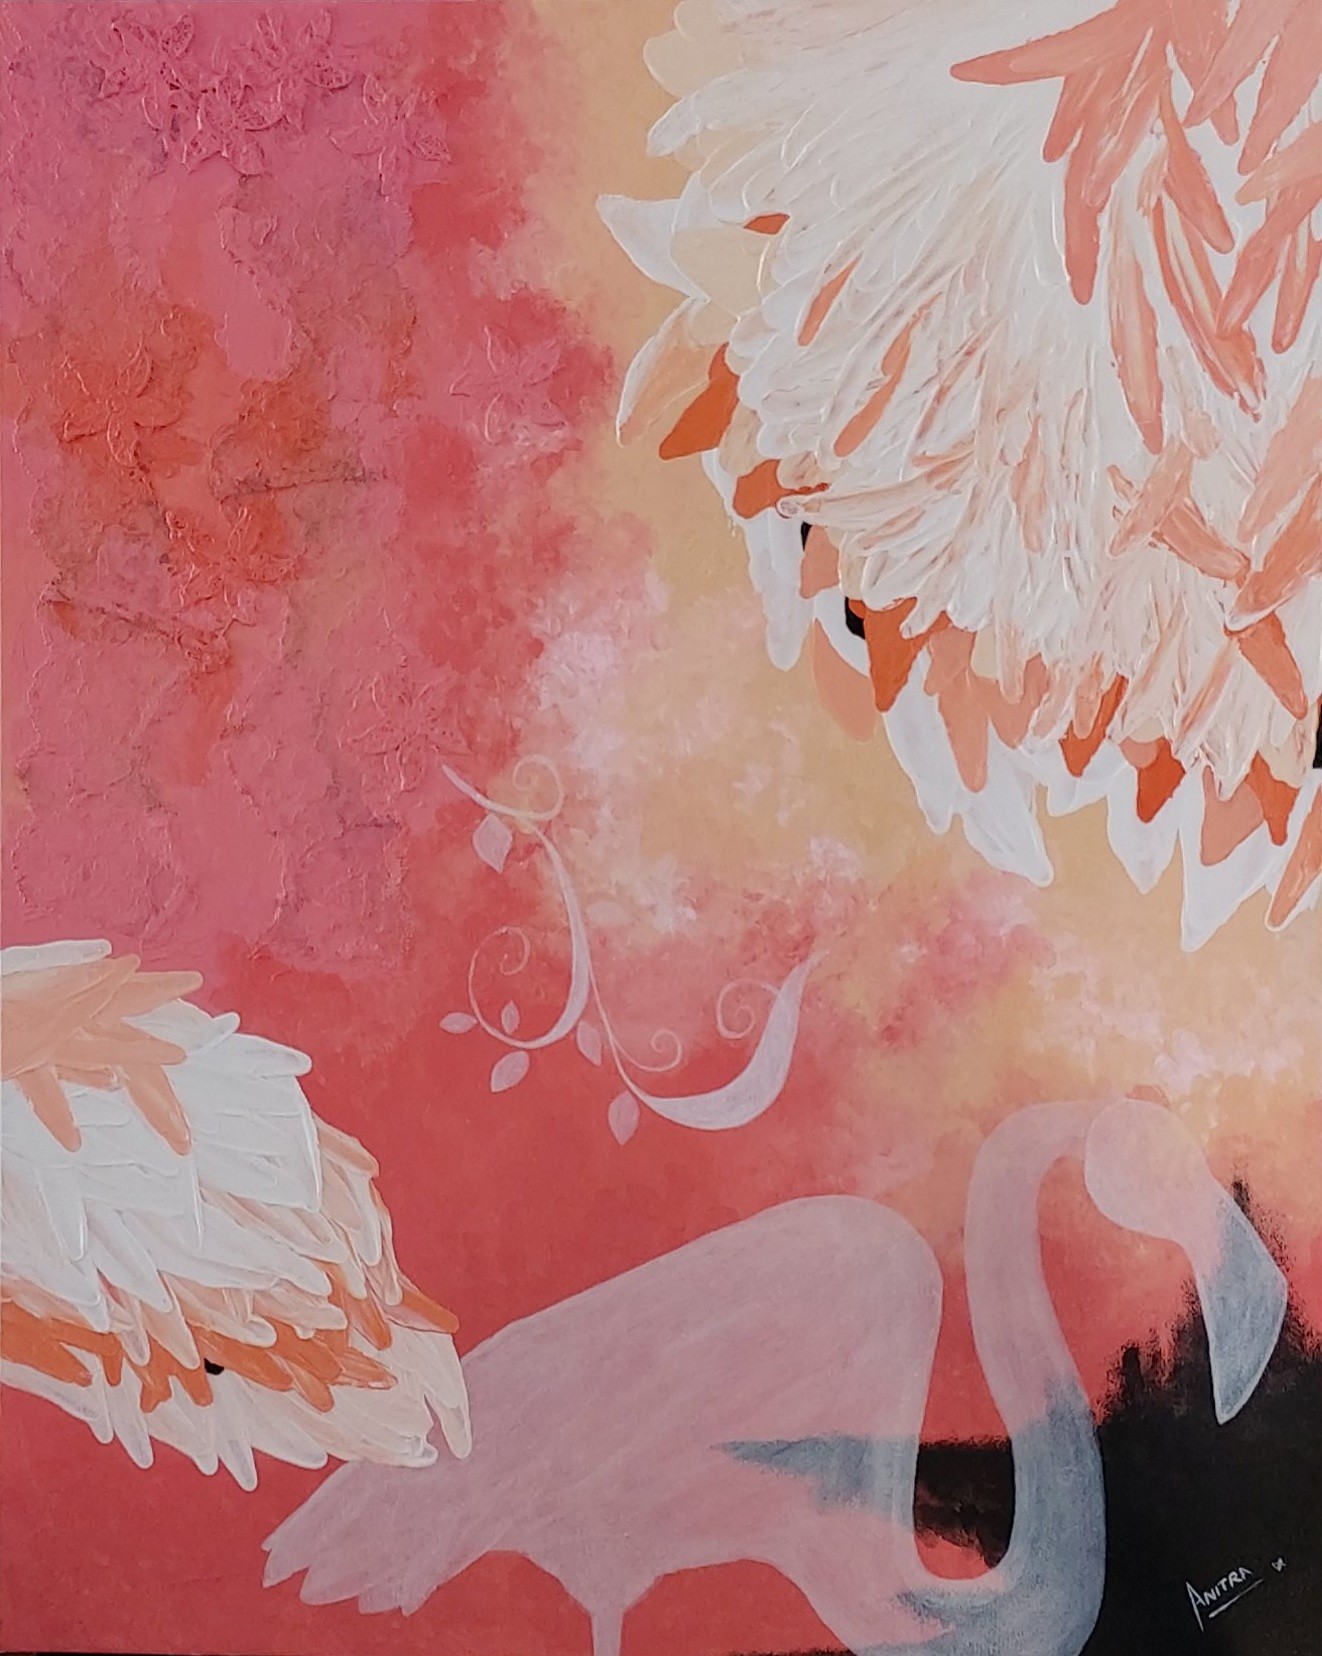 The Flaming Bird by Anitra De Silva